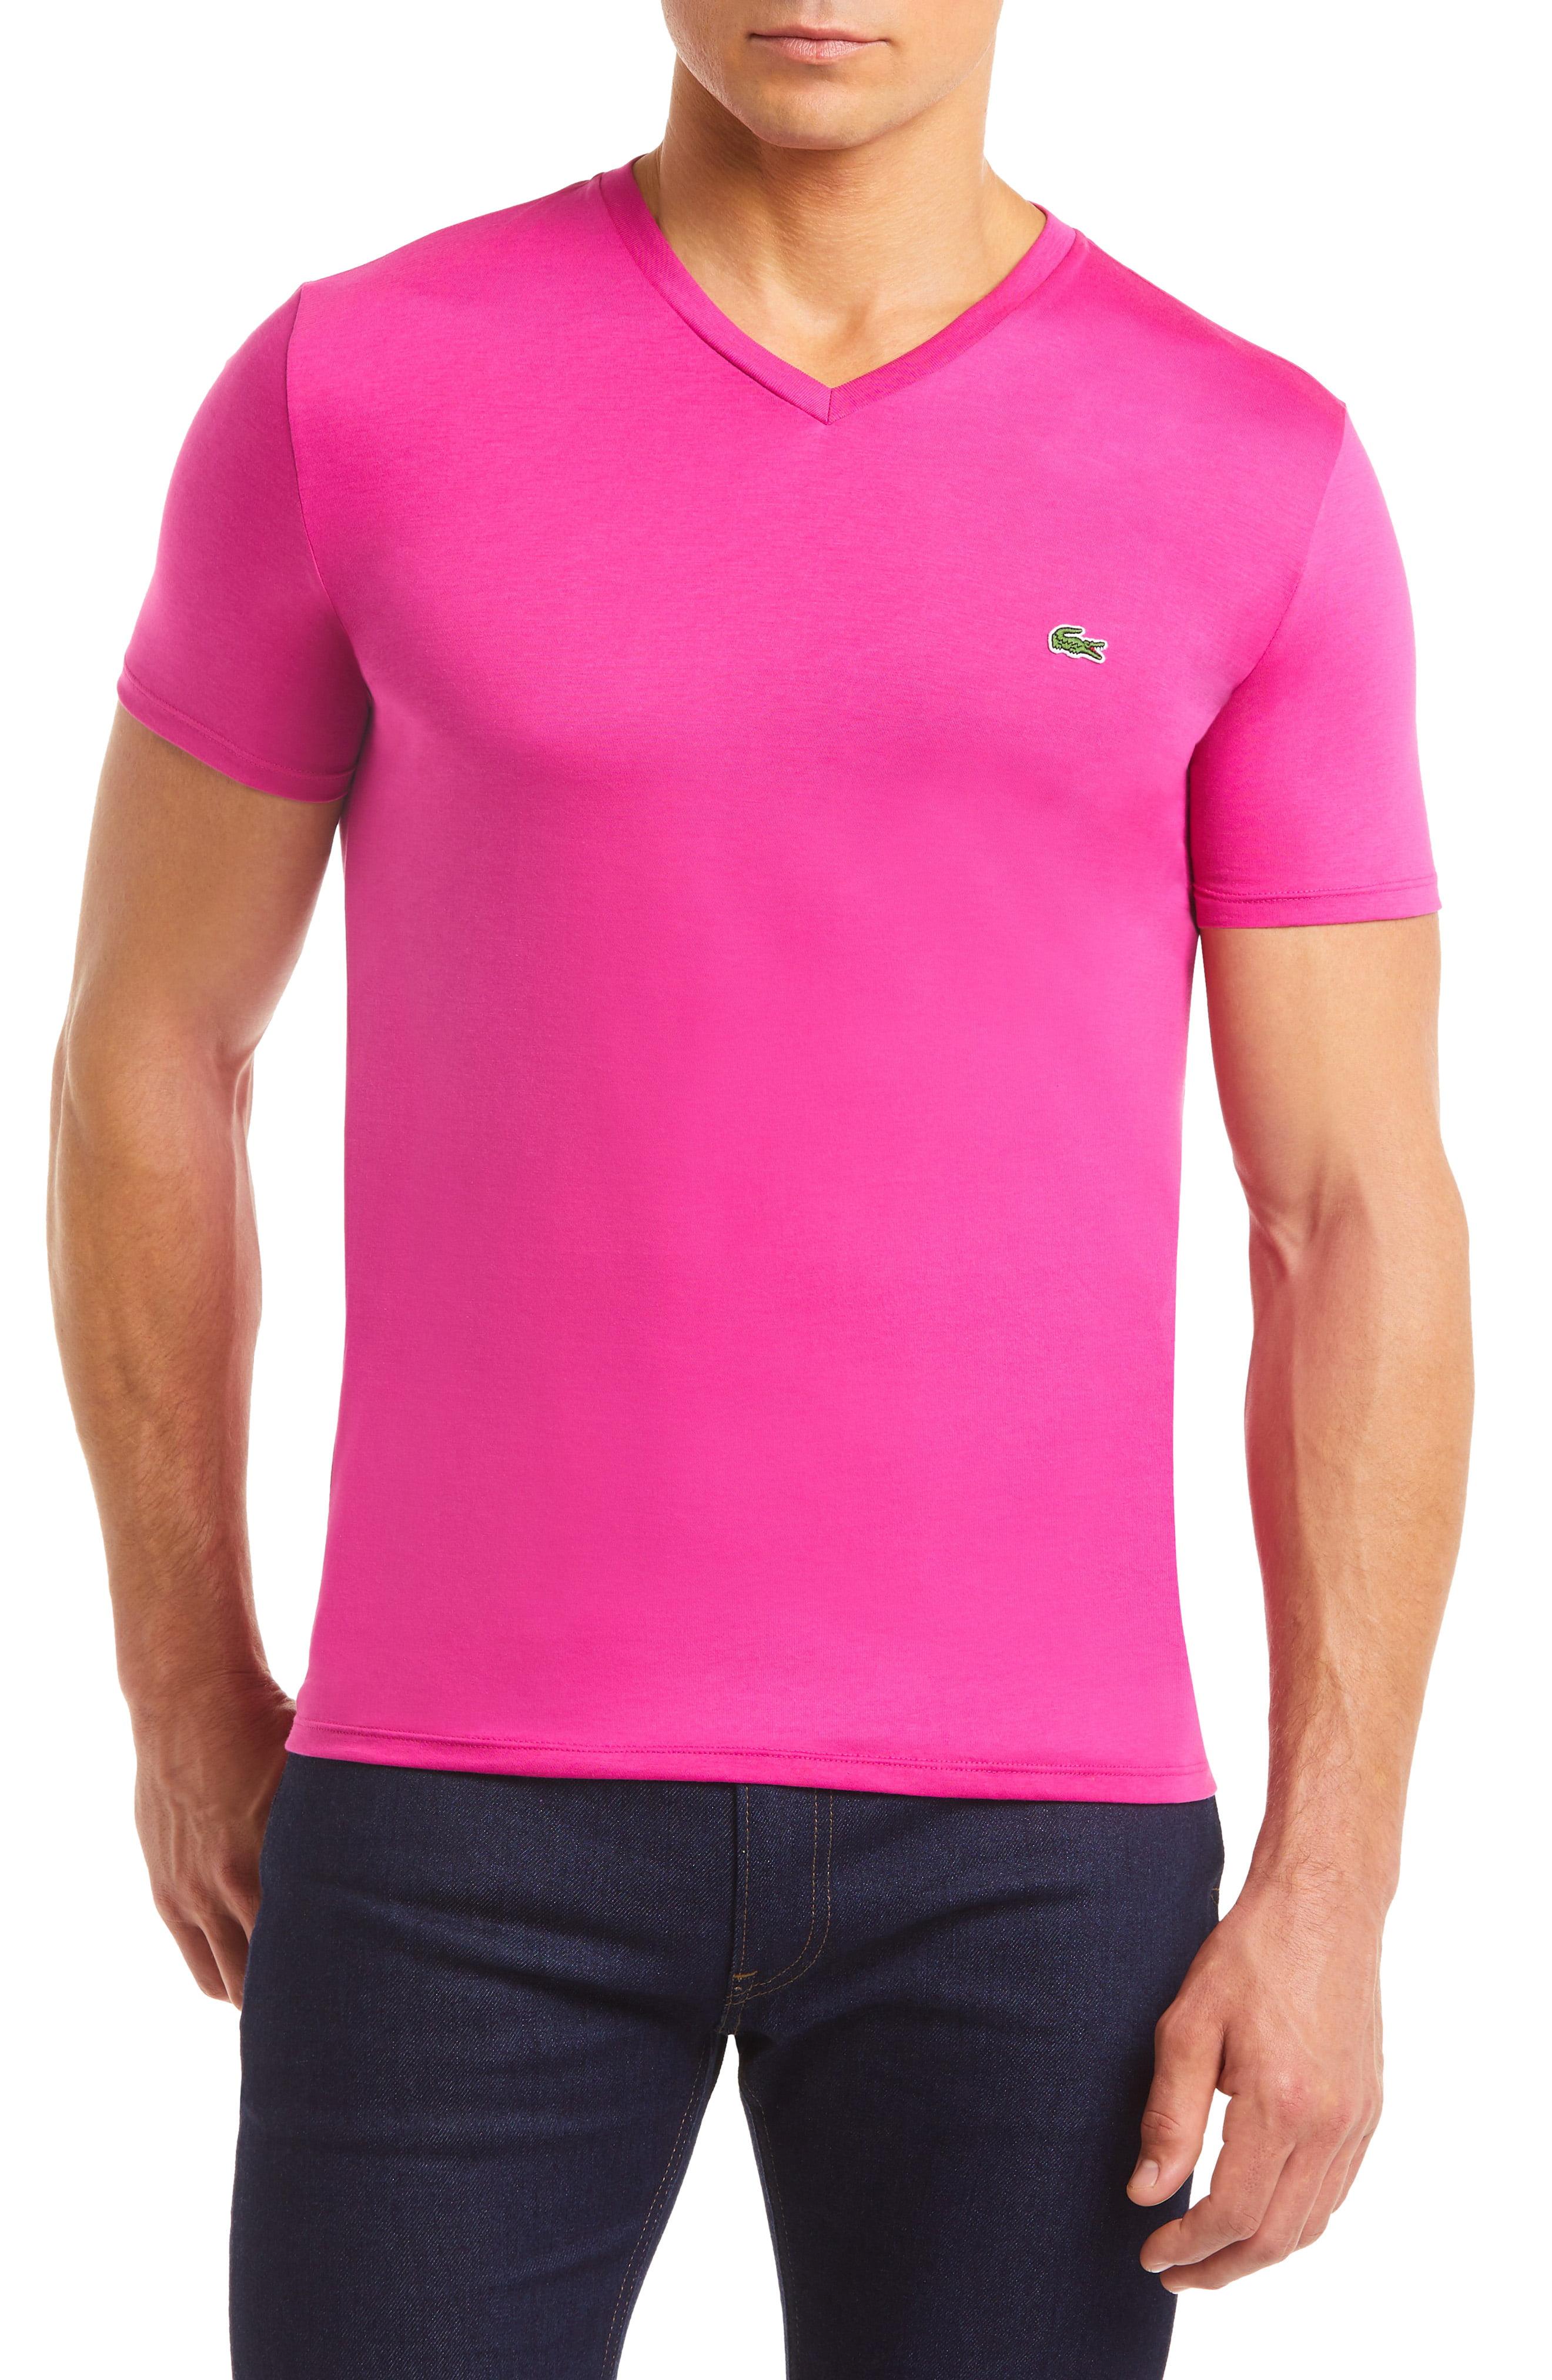 Lacoste Cotton Regular Fit V-neck T-shirt in Pink for Men - Lyst